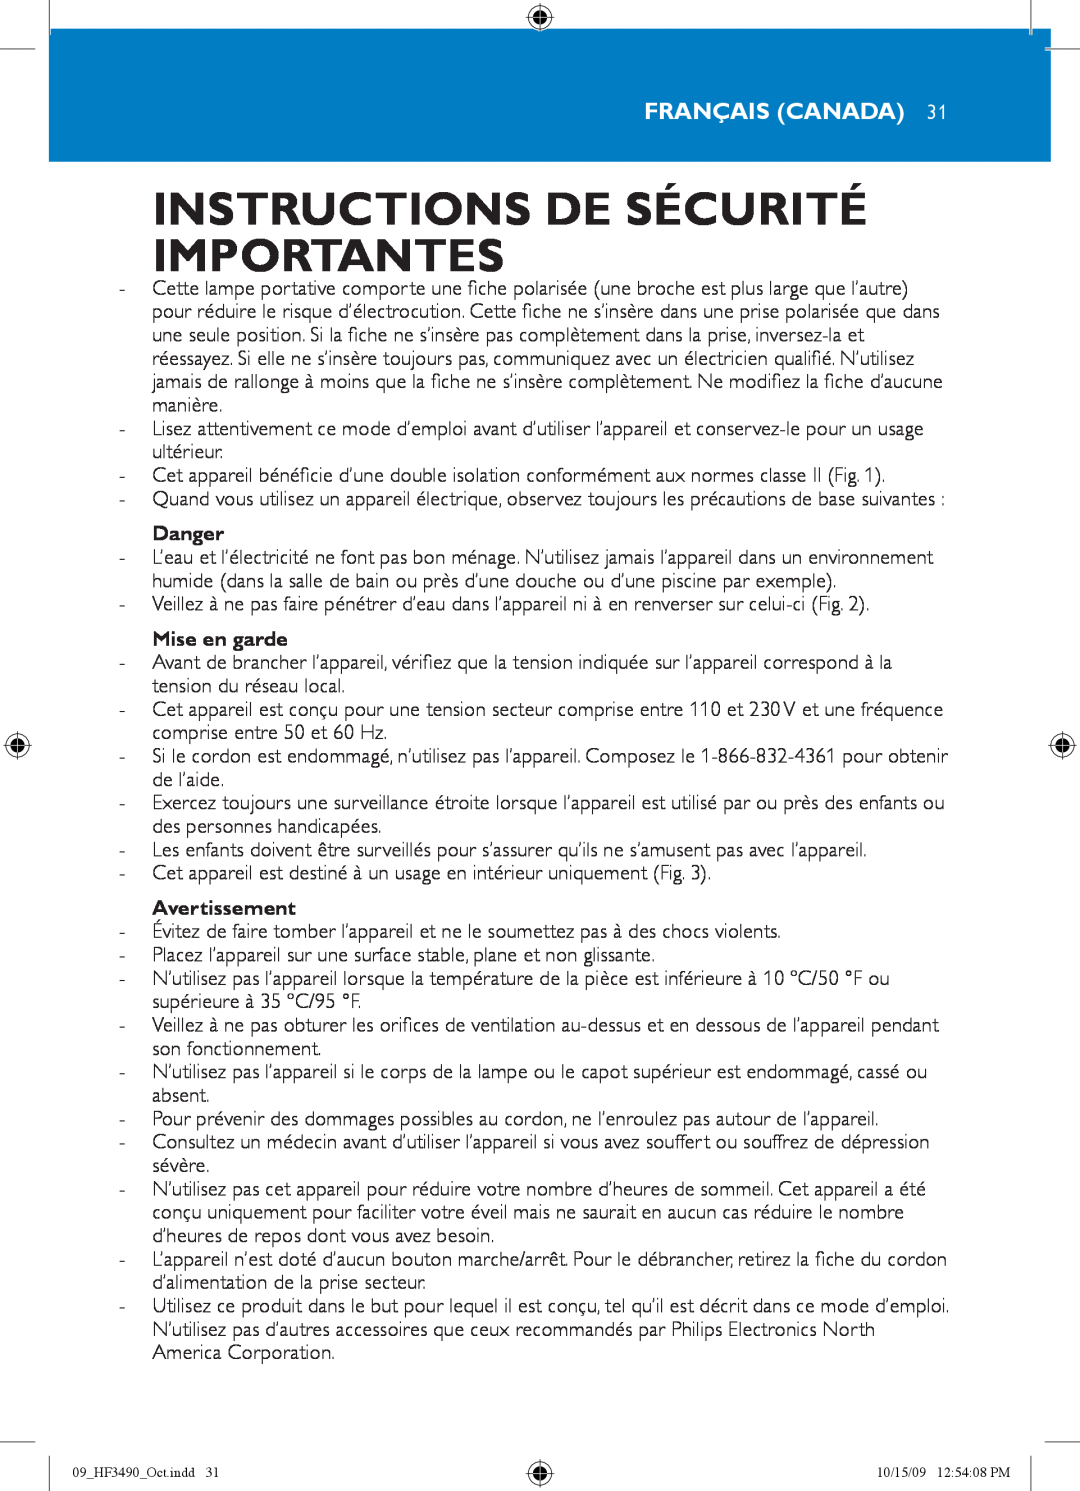 Philips HF3490/60 manual Instructions De Sécurité Importantes, Français Canada, Mise en garde, Avertissement, Danger 